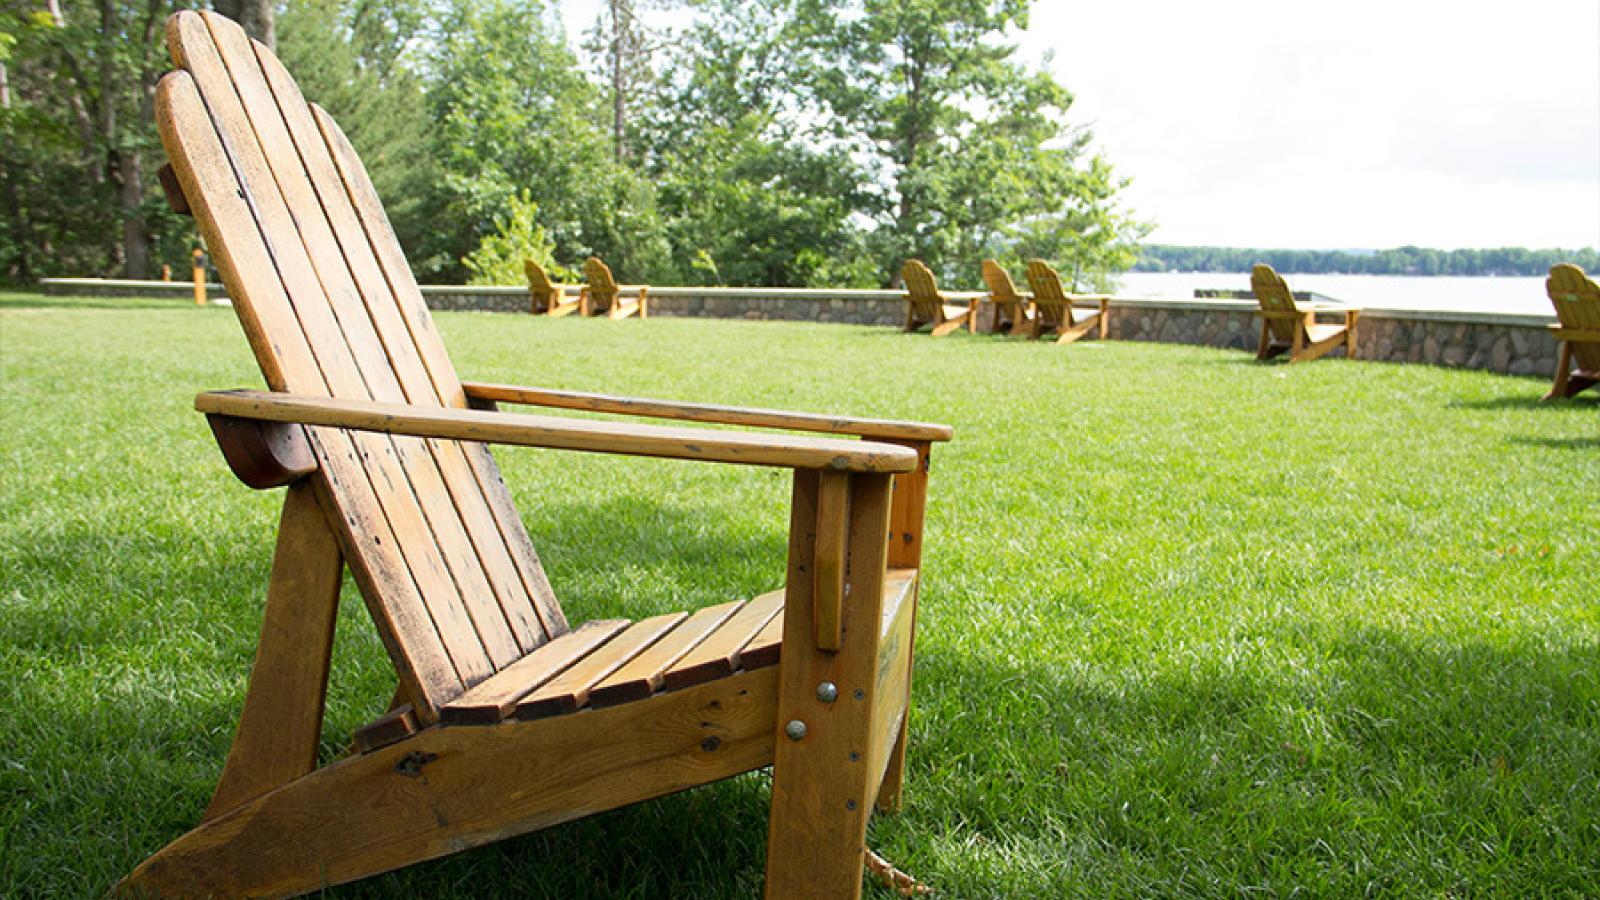 An Adirondack chair in Corson Park